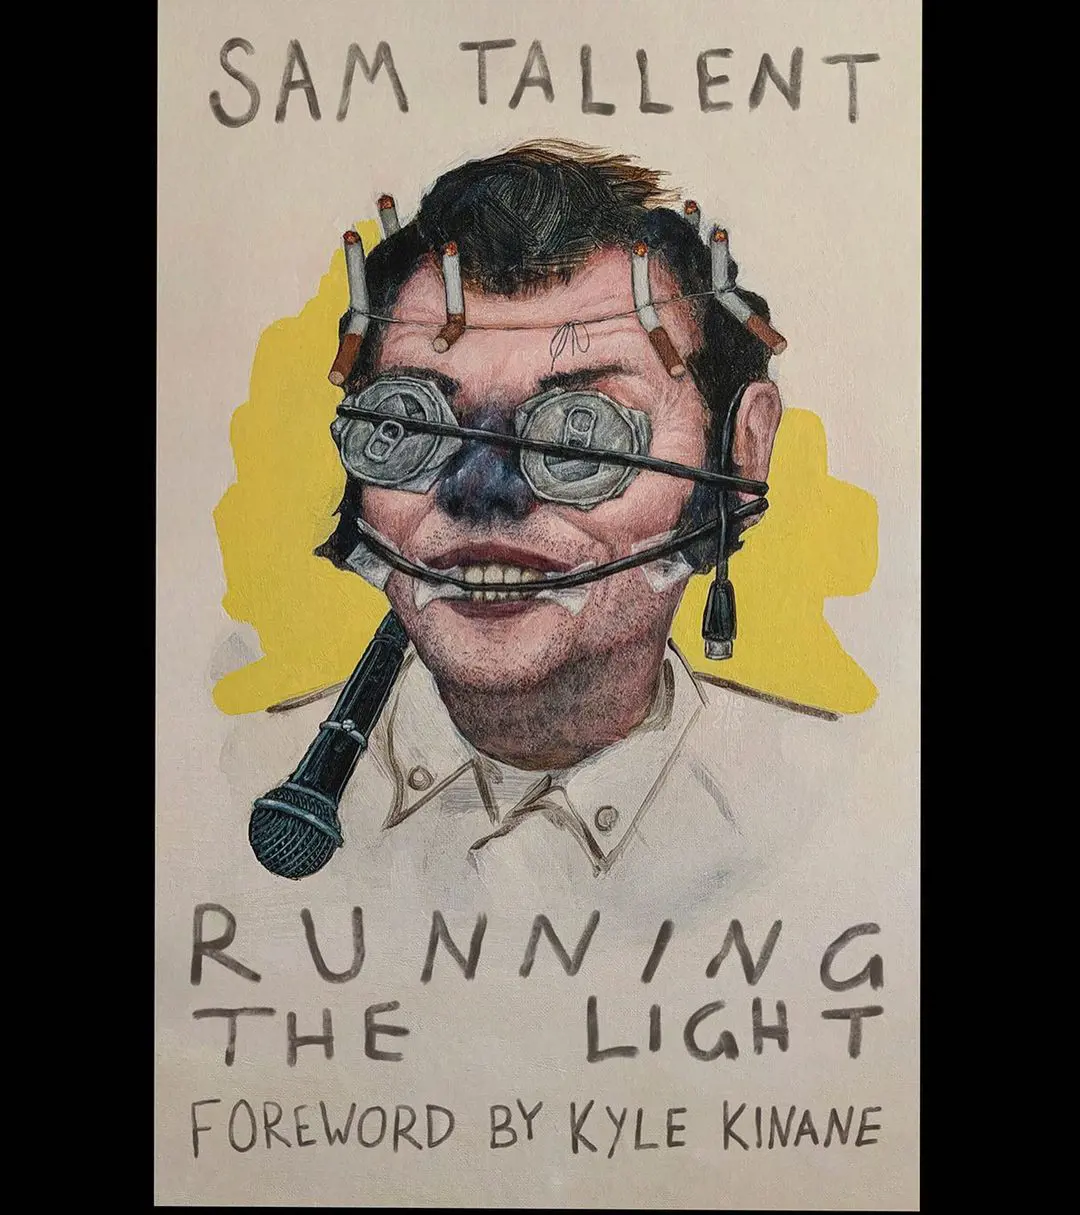 Sam Tallent's book Running The Light 